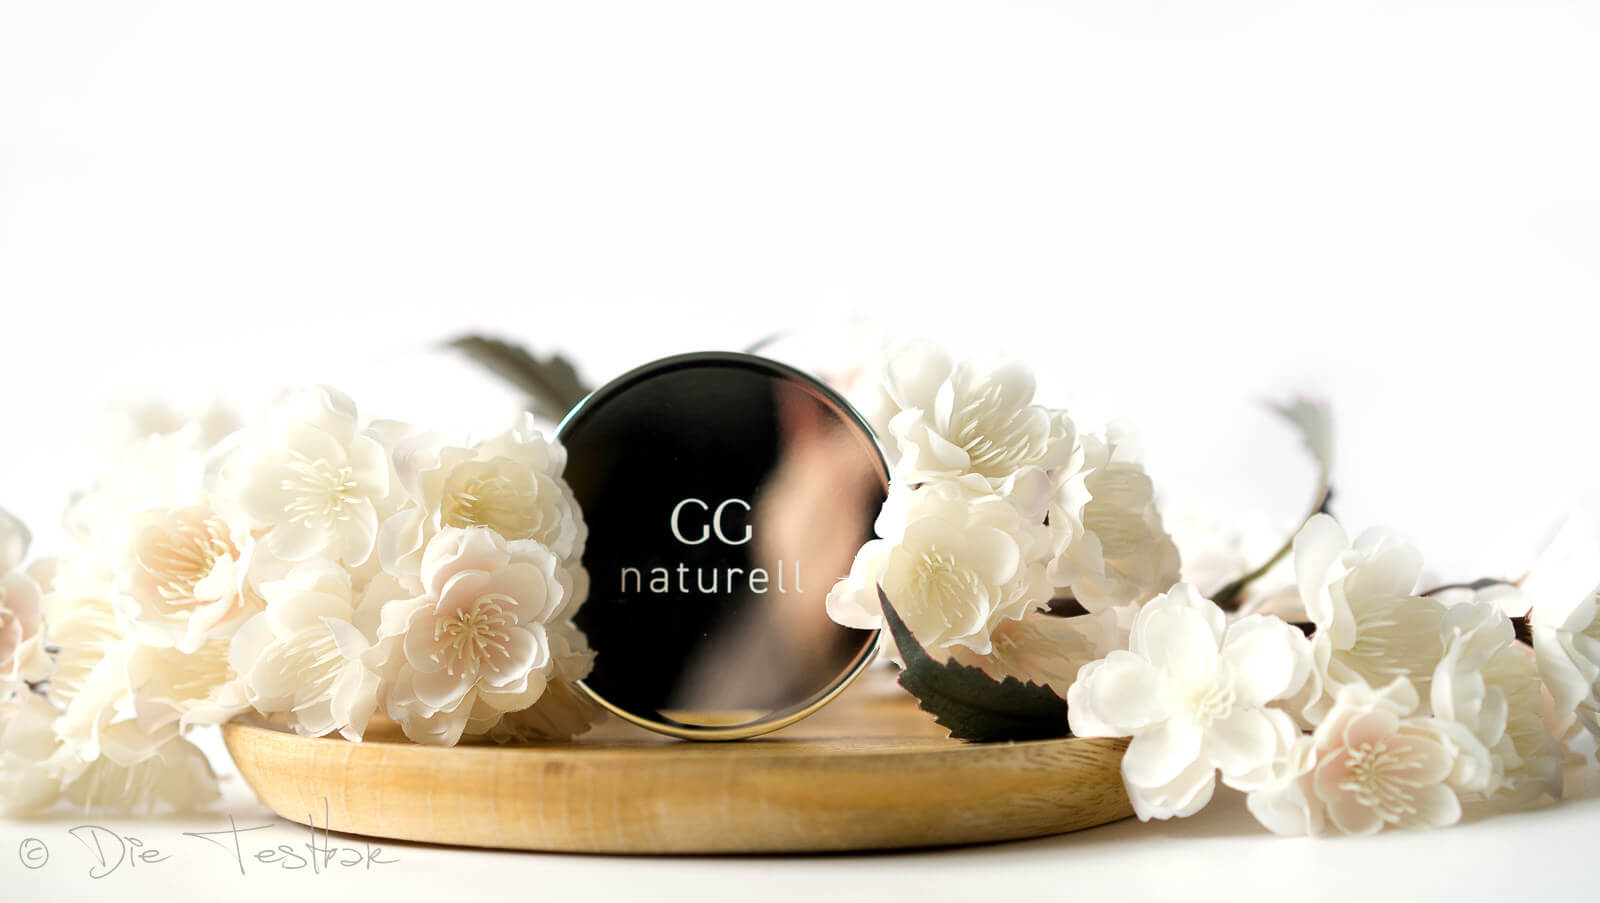 Ganzheitskosmetik - GG naturell - Hochwertige Kosmetik von Gertraud Gruber 8